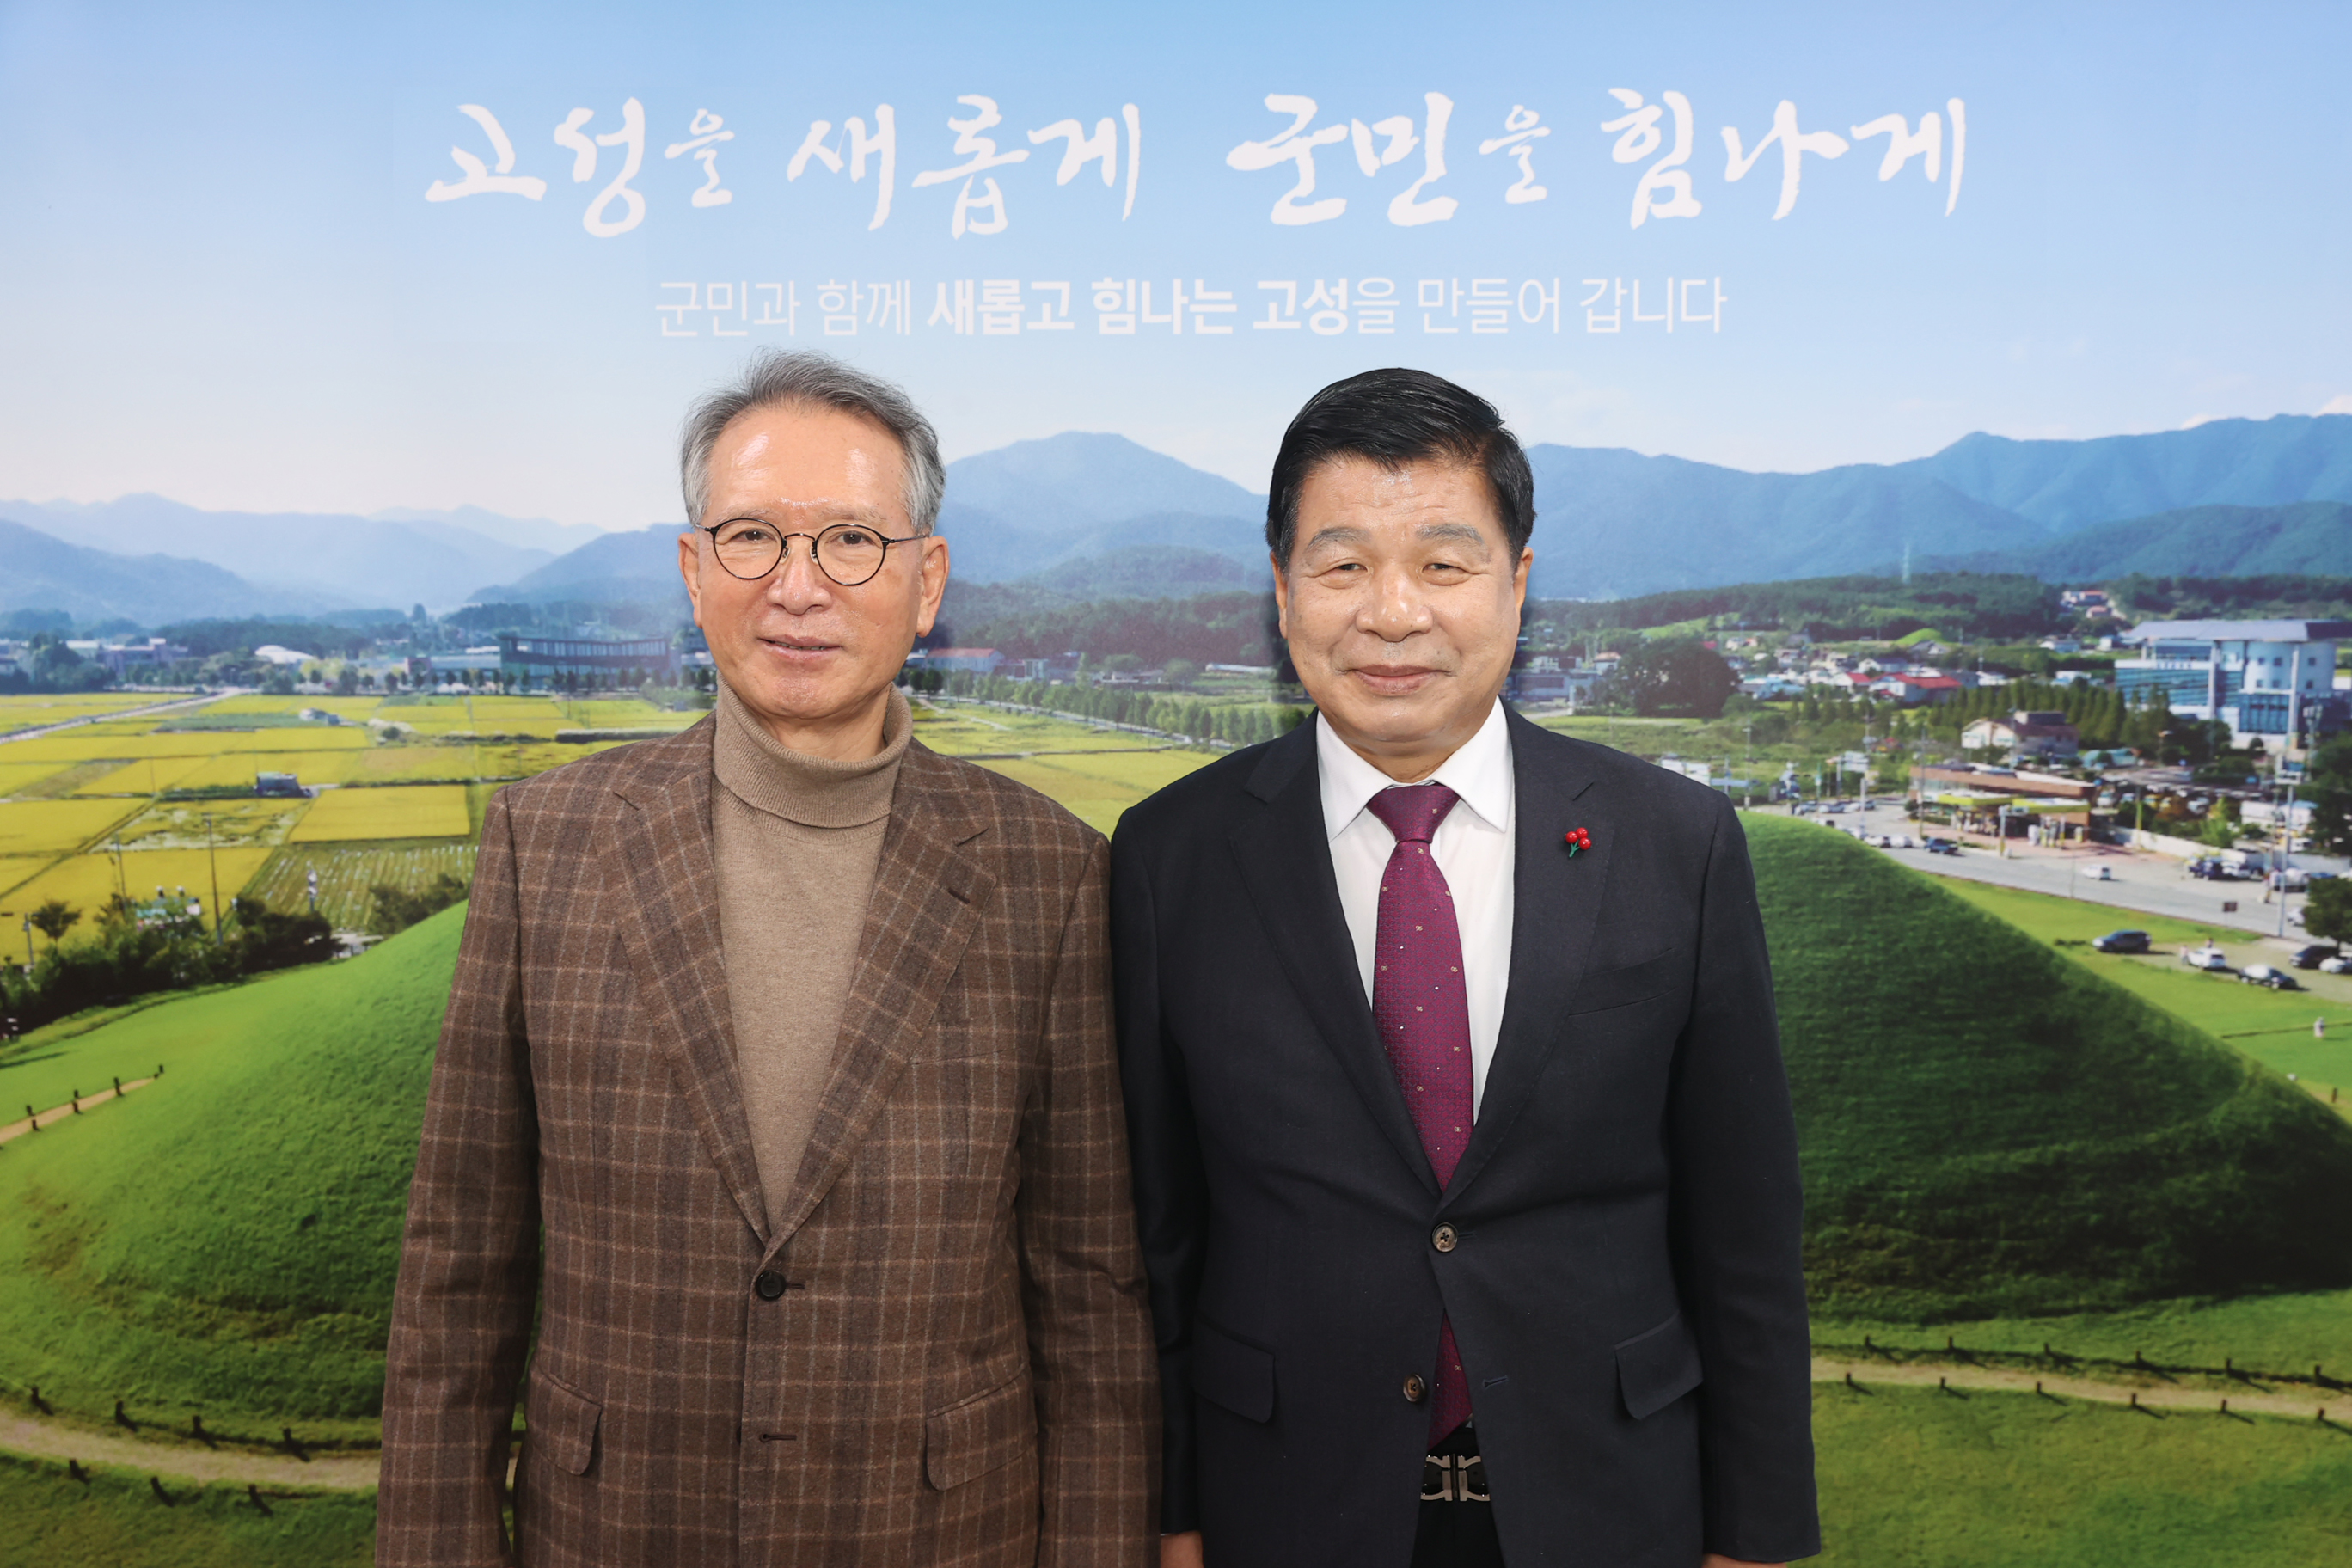 12월21일 김형오 전국회의장 방문 관련자료